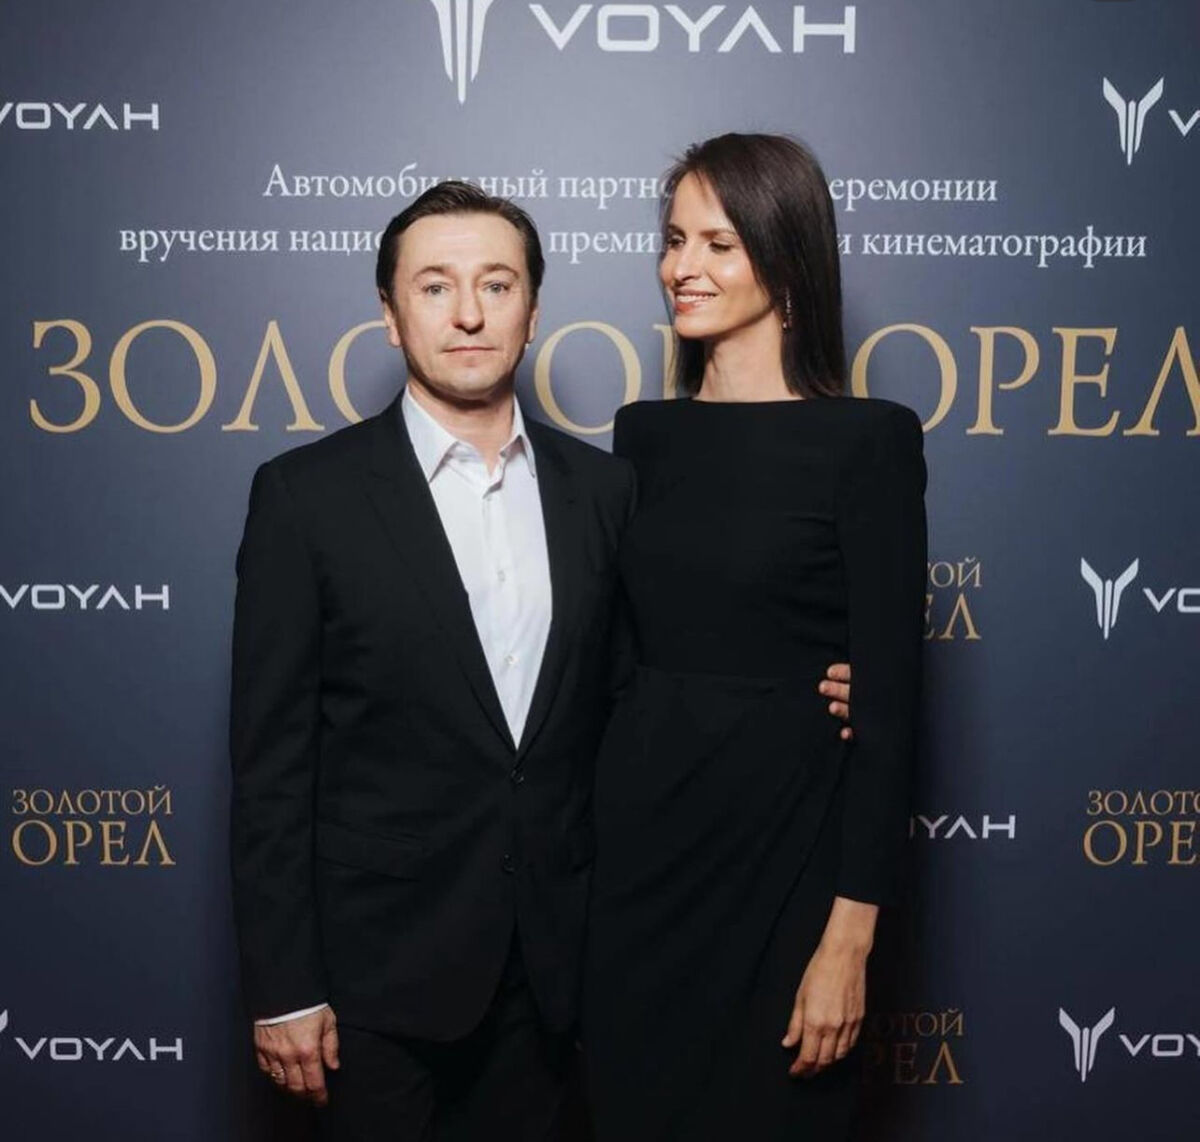 Сергей Безруков удивлен подарком жены на годовщину свадьбы 